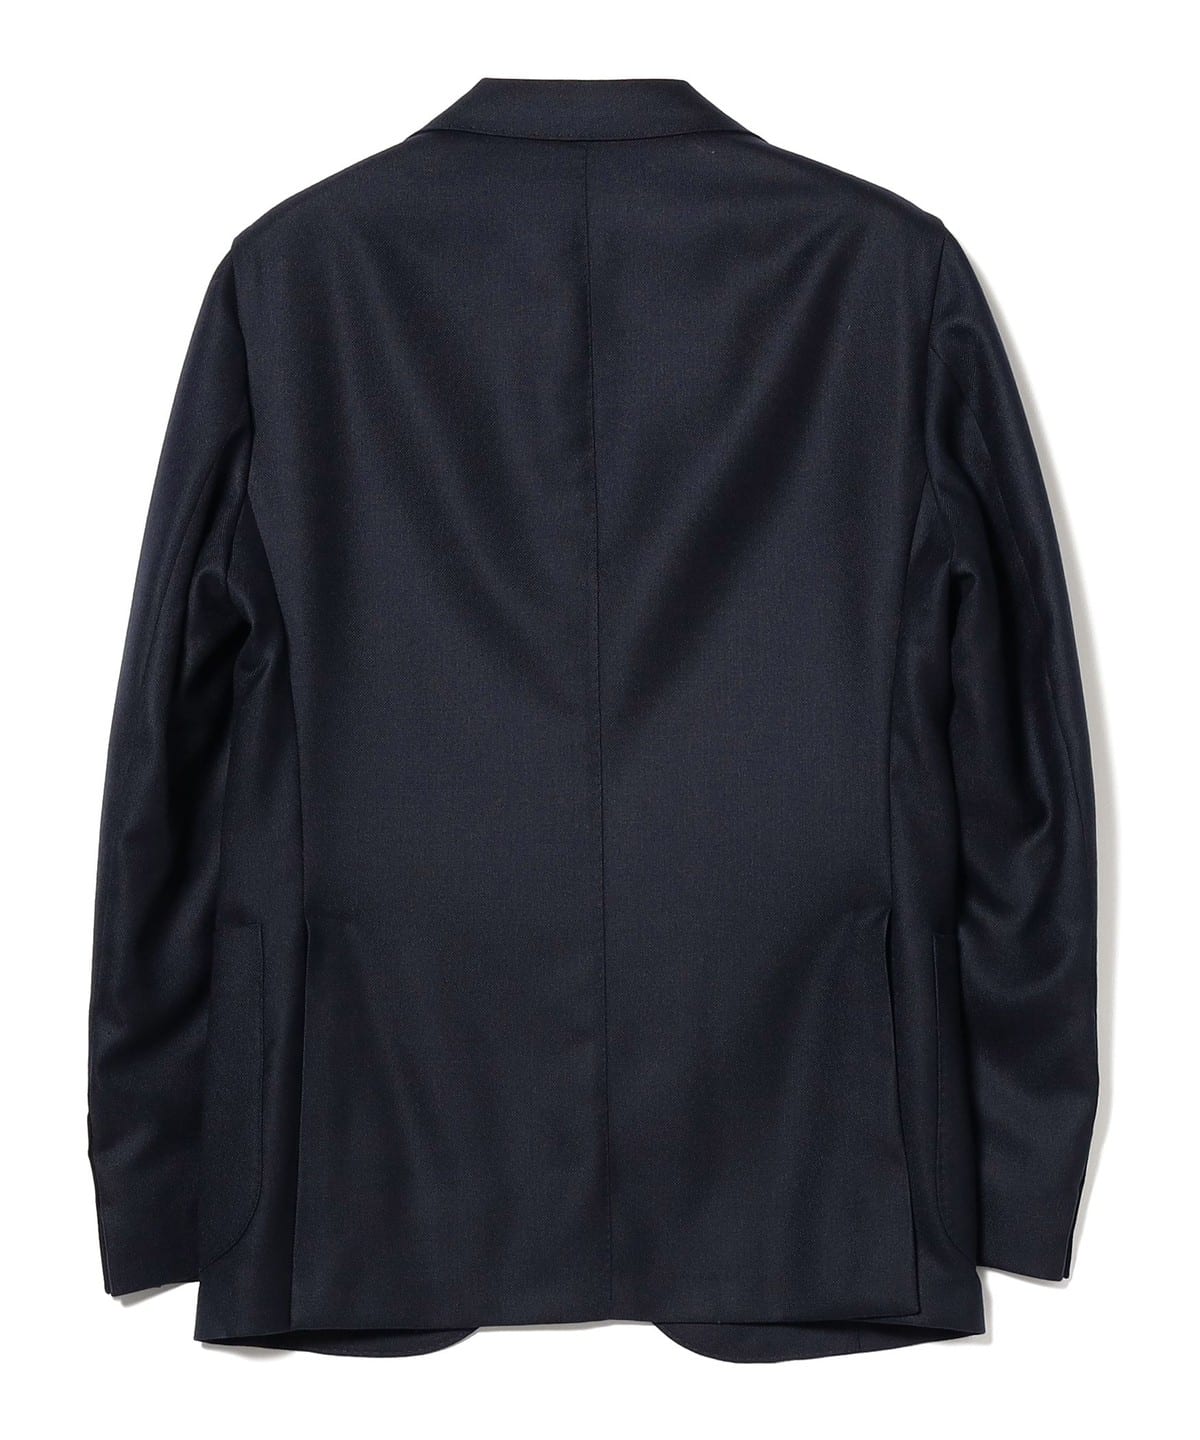 BEAMS F BEAMS / DOVER Hopsack jacket (tailored jacket BEAMS mail